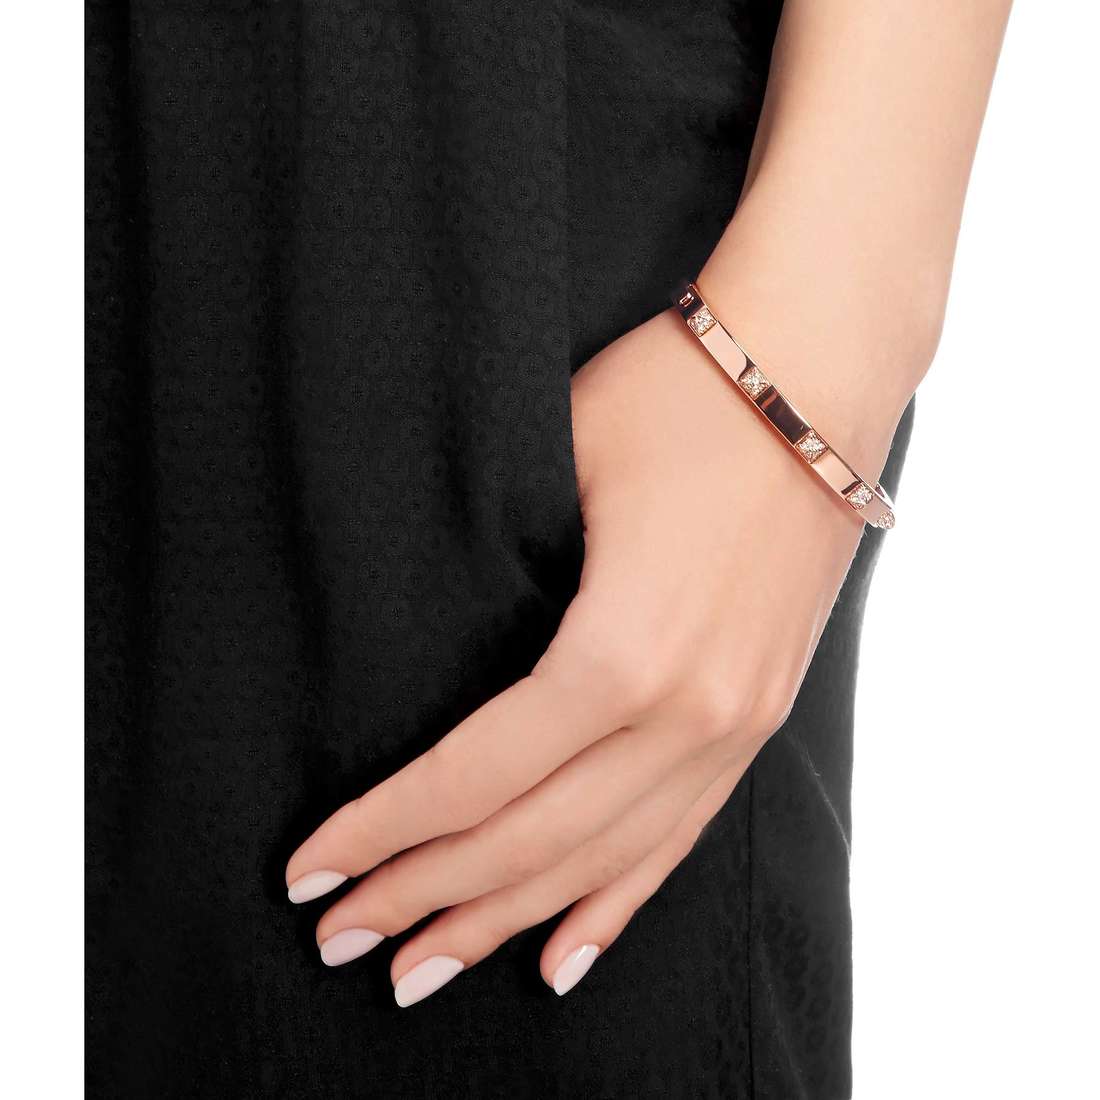 Swarovski bracelets Tactic woman 5184528 wearing